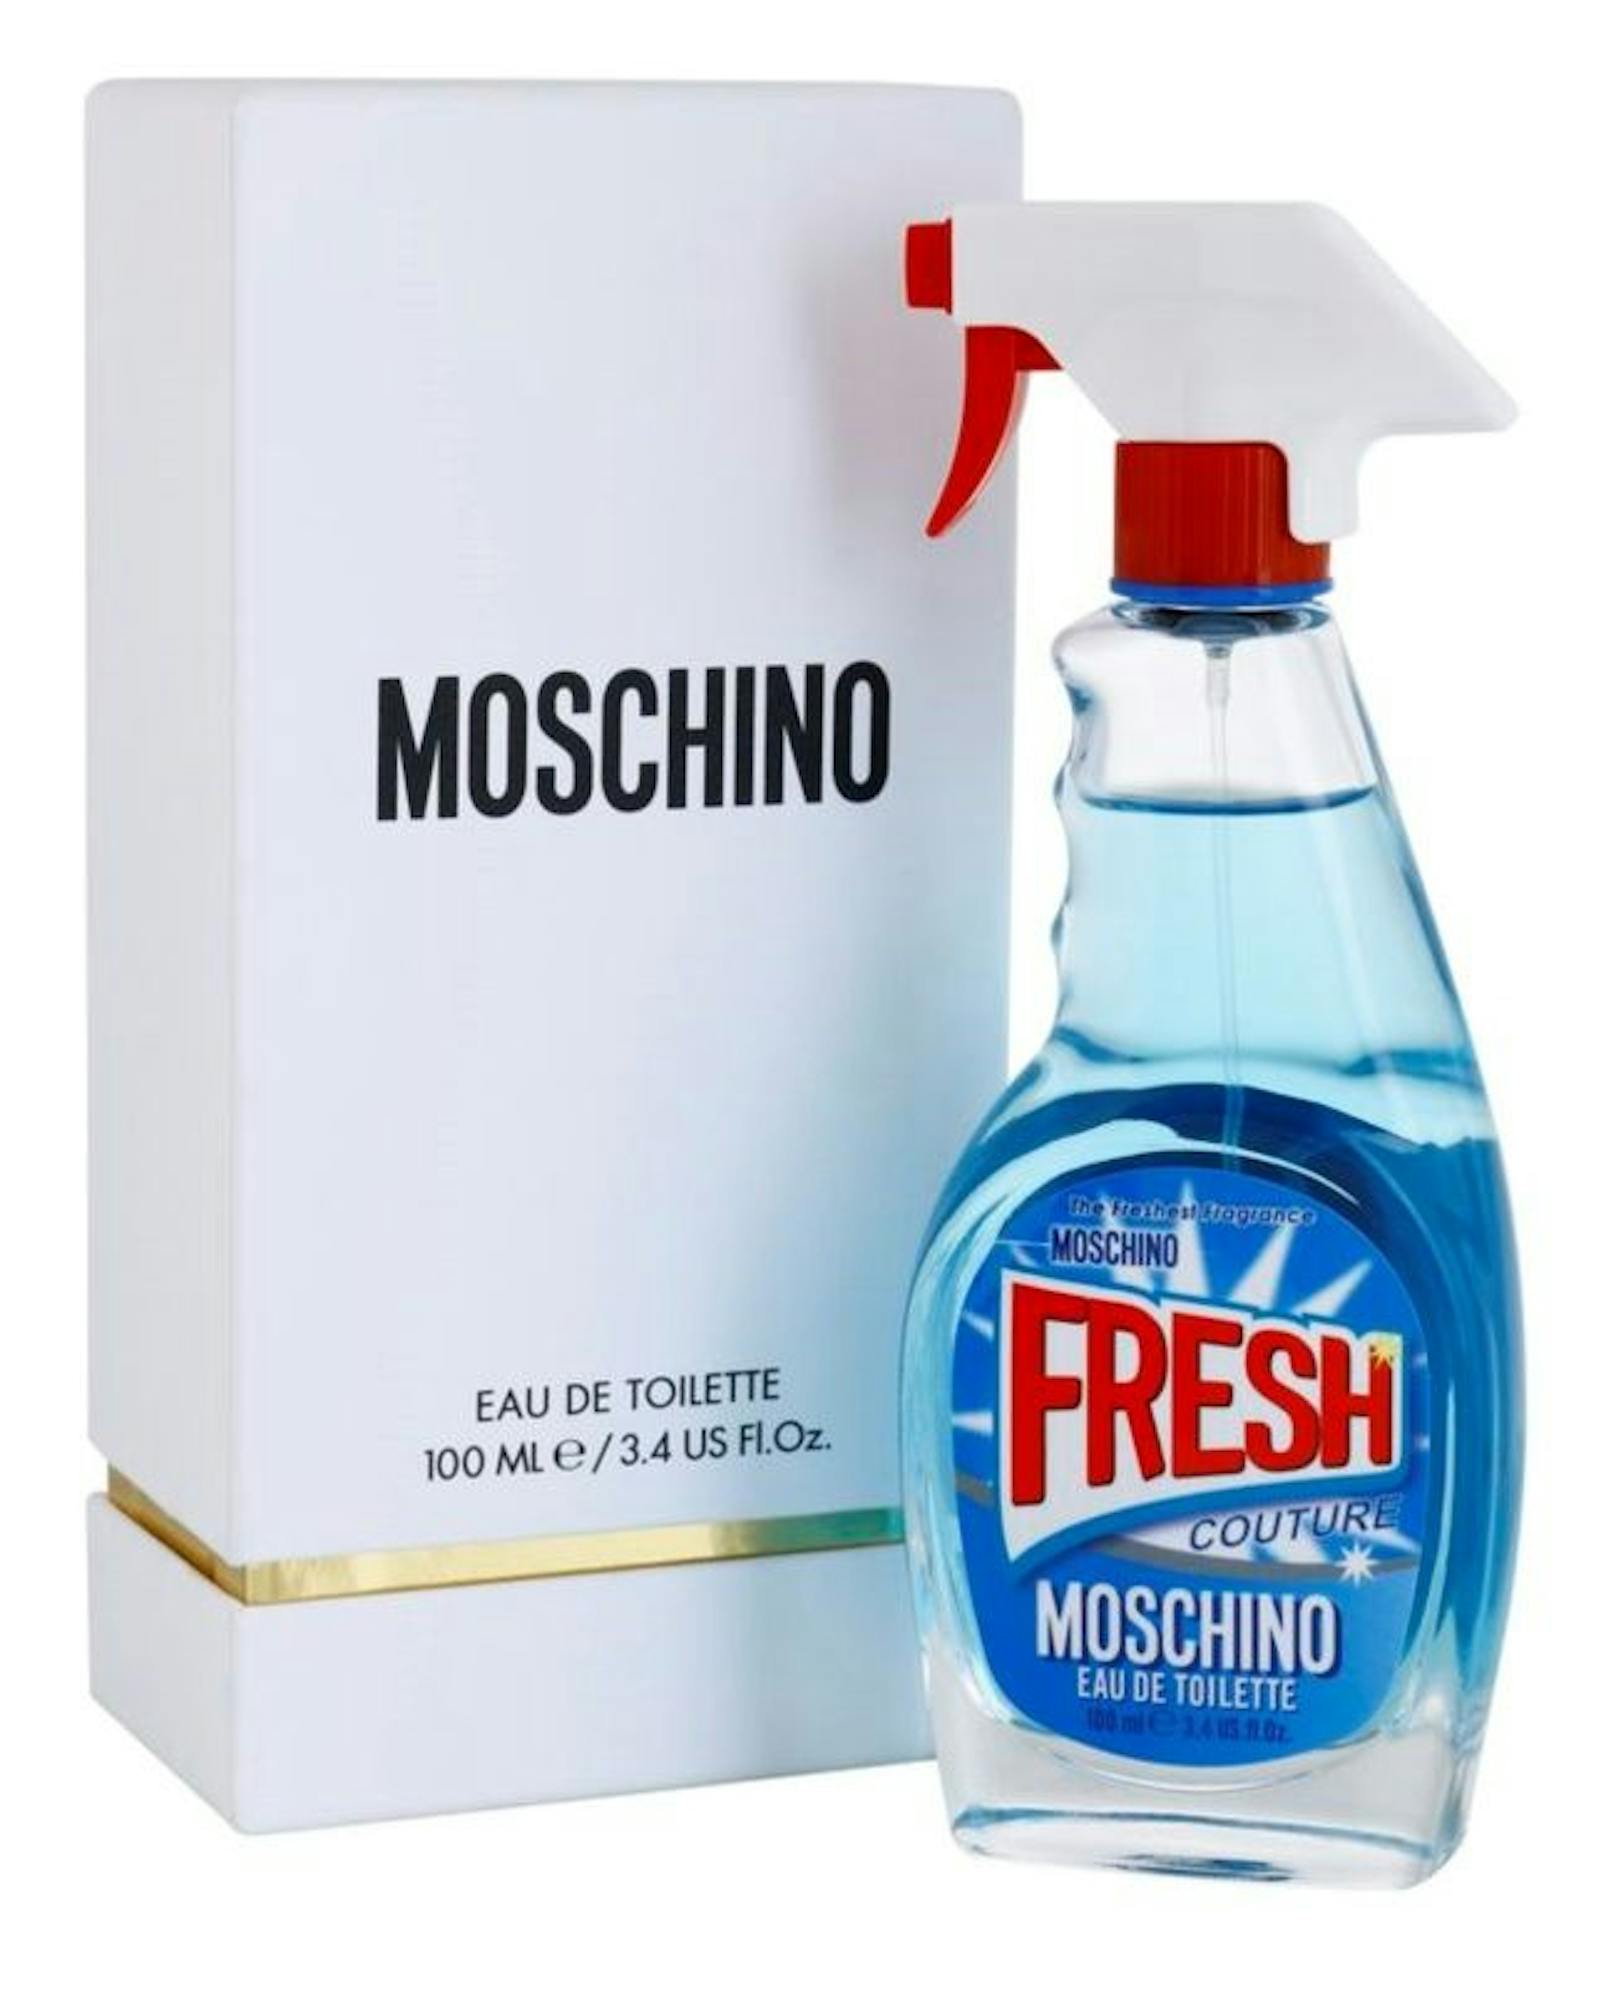 Im fruchtigen Mix von Moschino findest du die Grundstoffe Patchouli, Ambroxan sowie hölzerne Duftnoten.